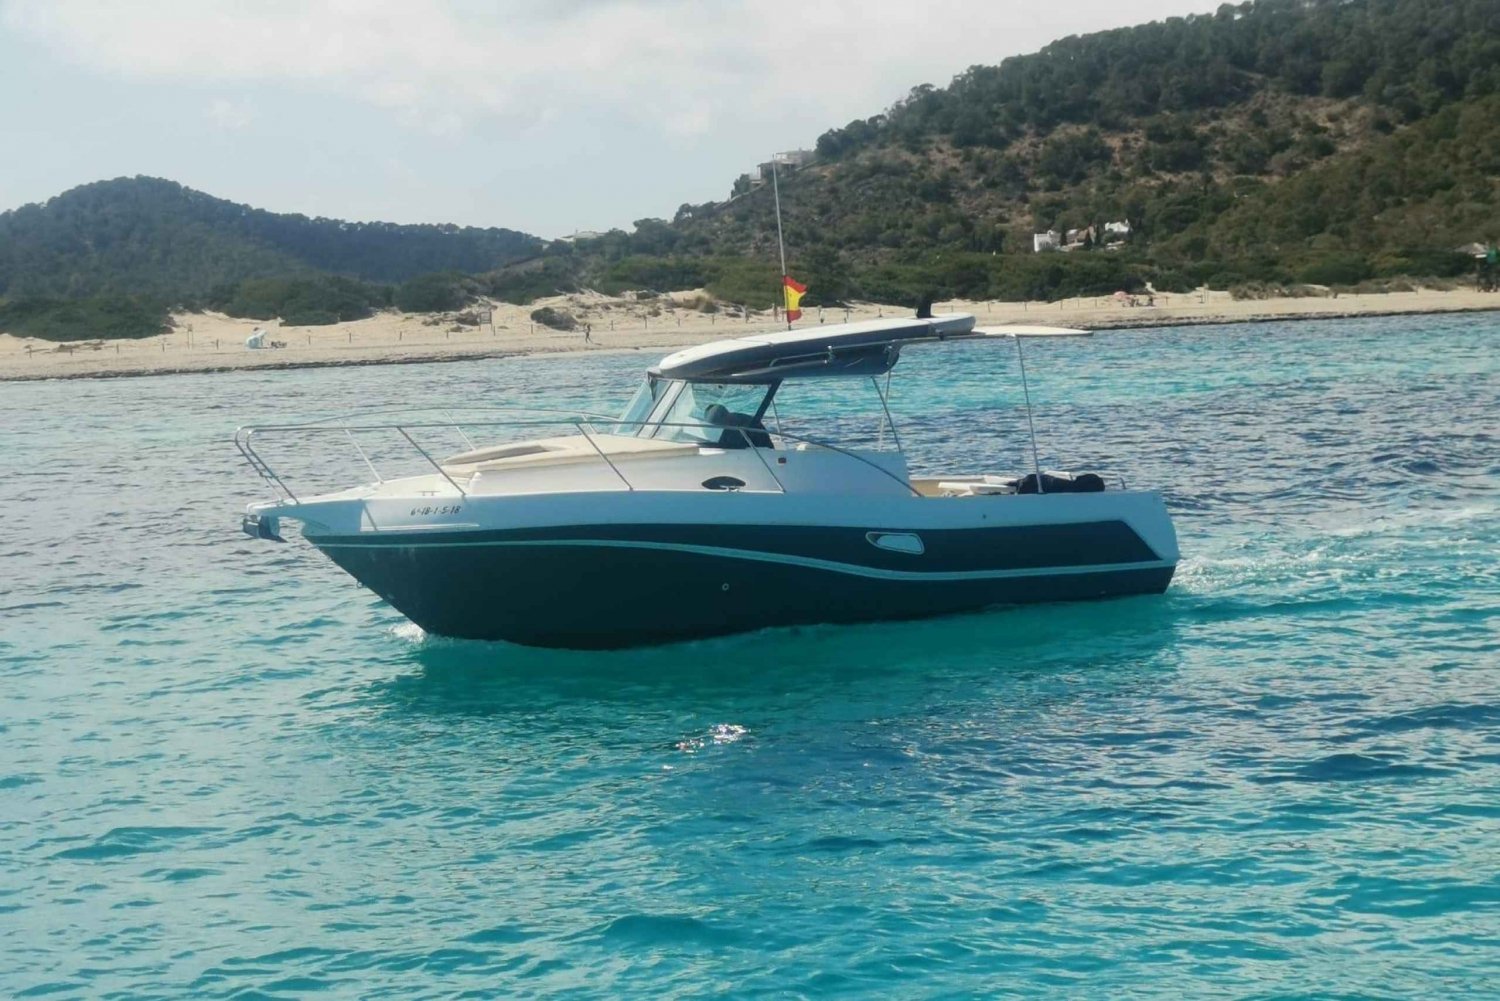 Tour en barco por Ibiza: navega por aguas cristalinas